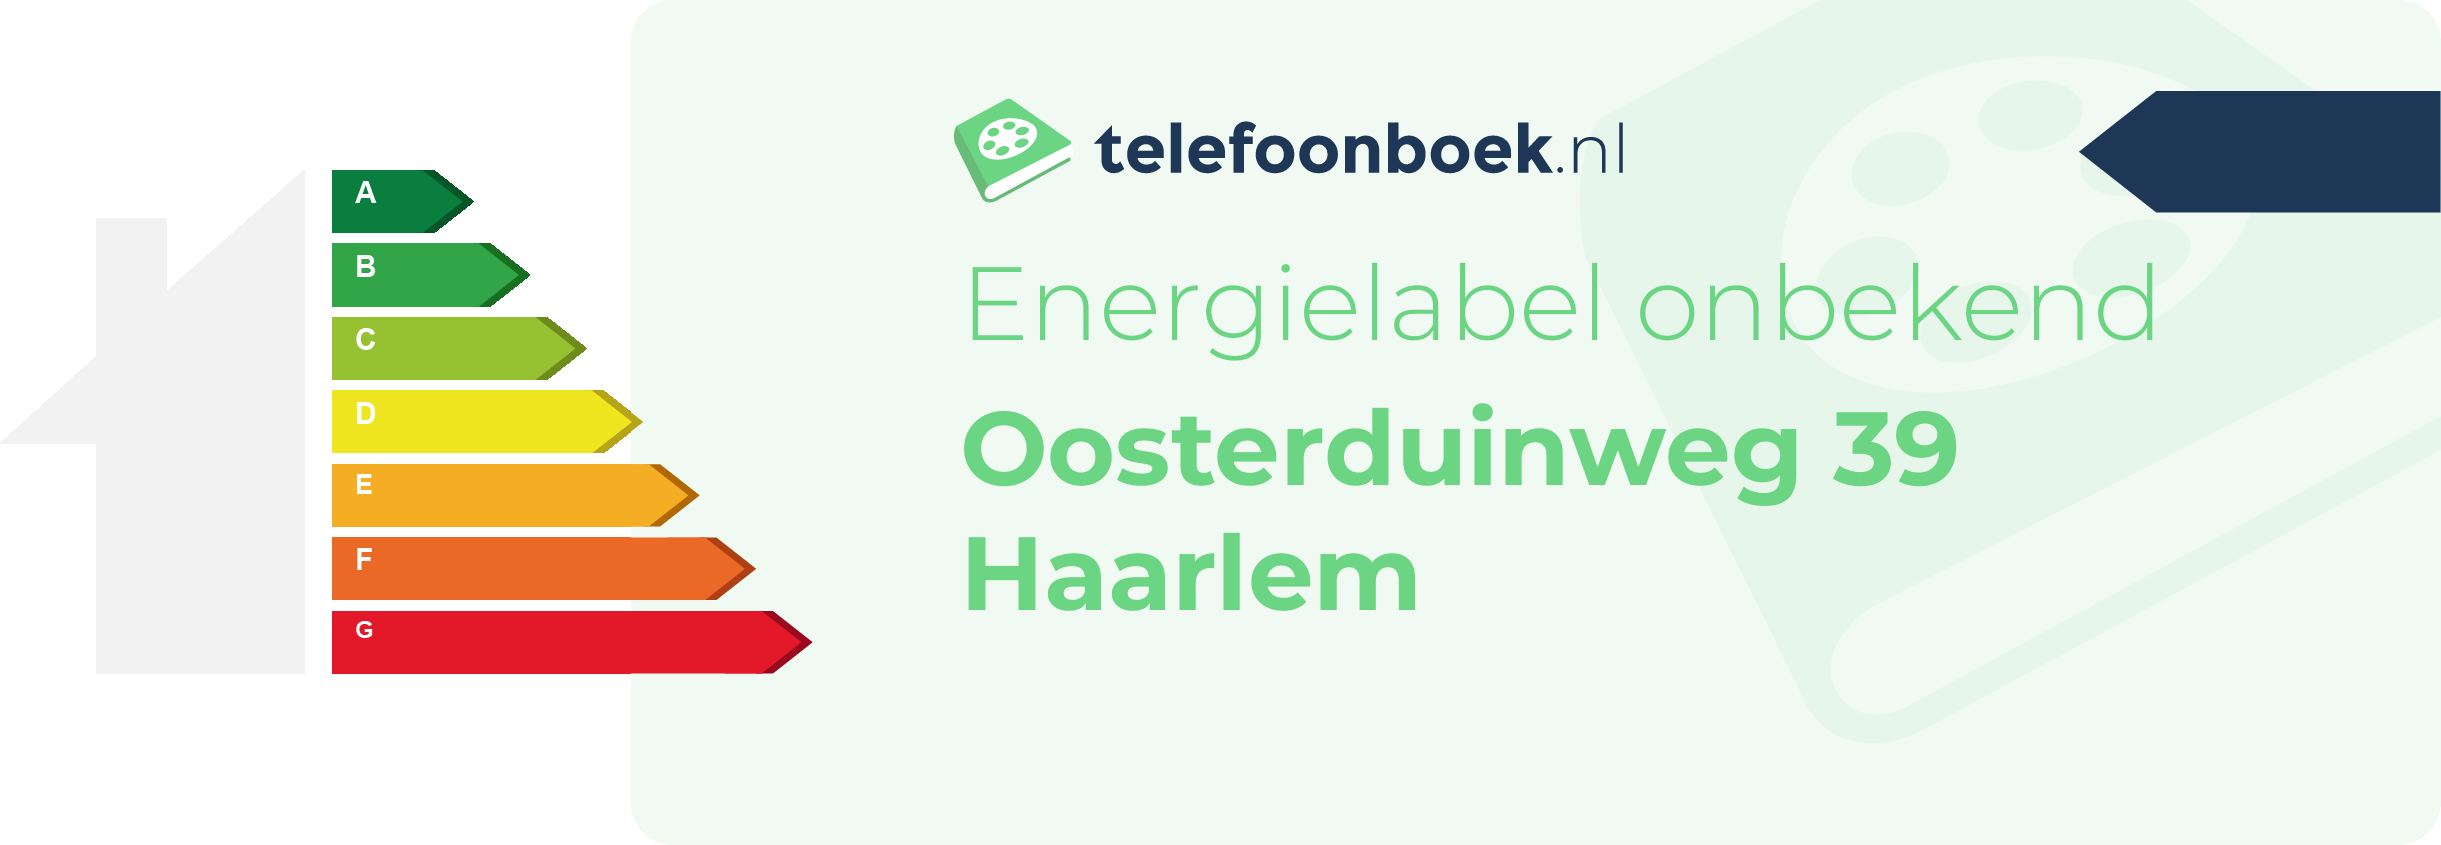 Energielabel Oosterduinweg 39 Haarlem